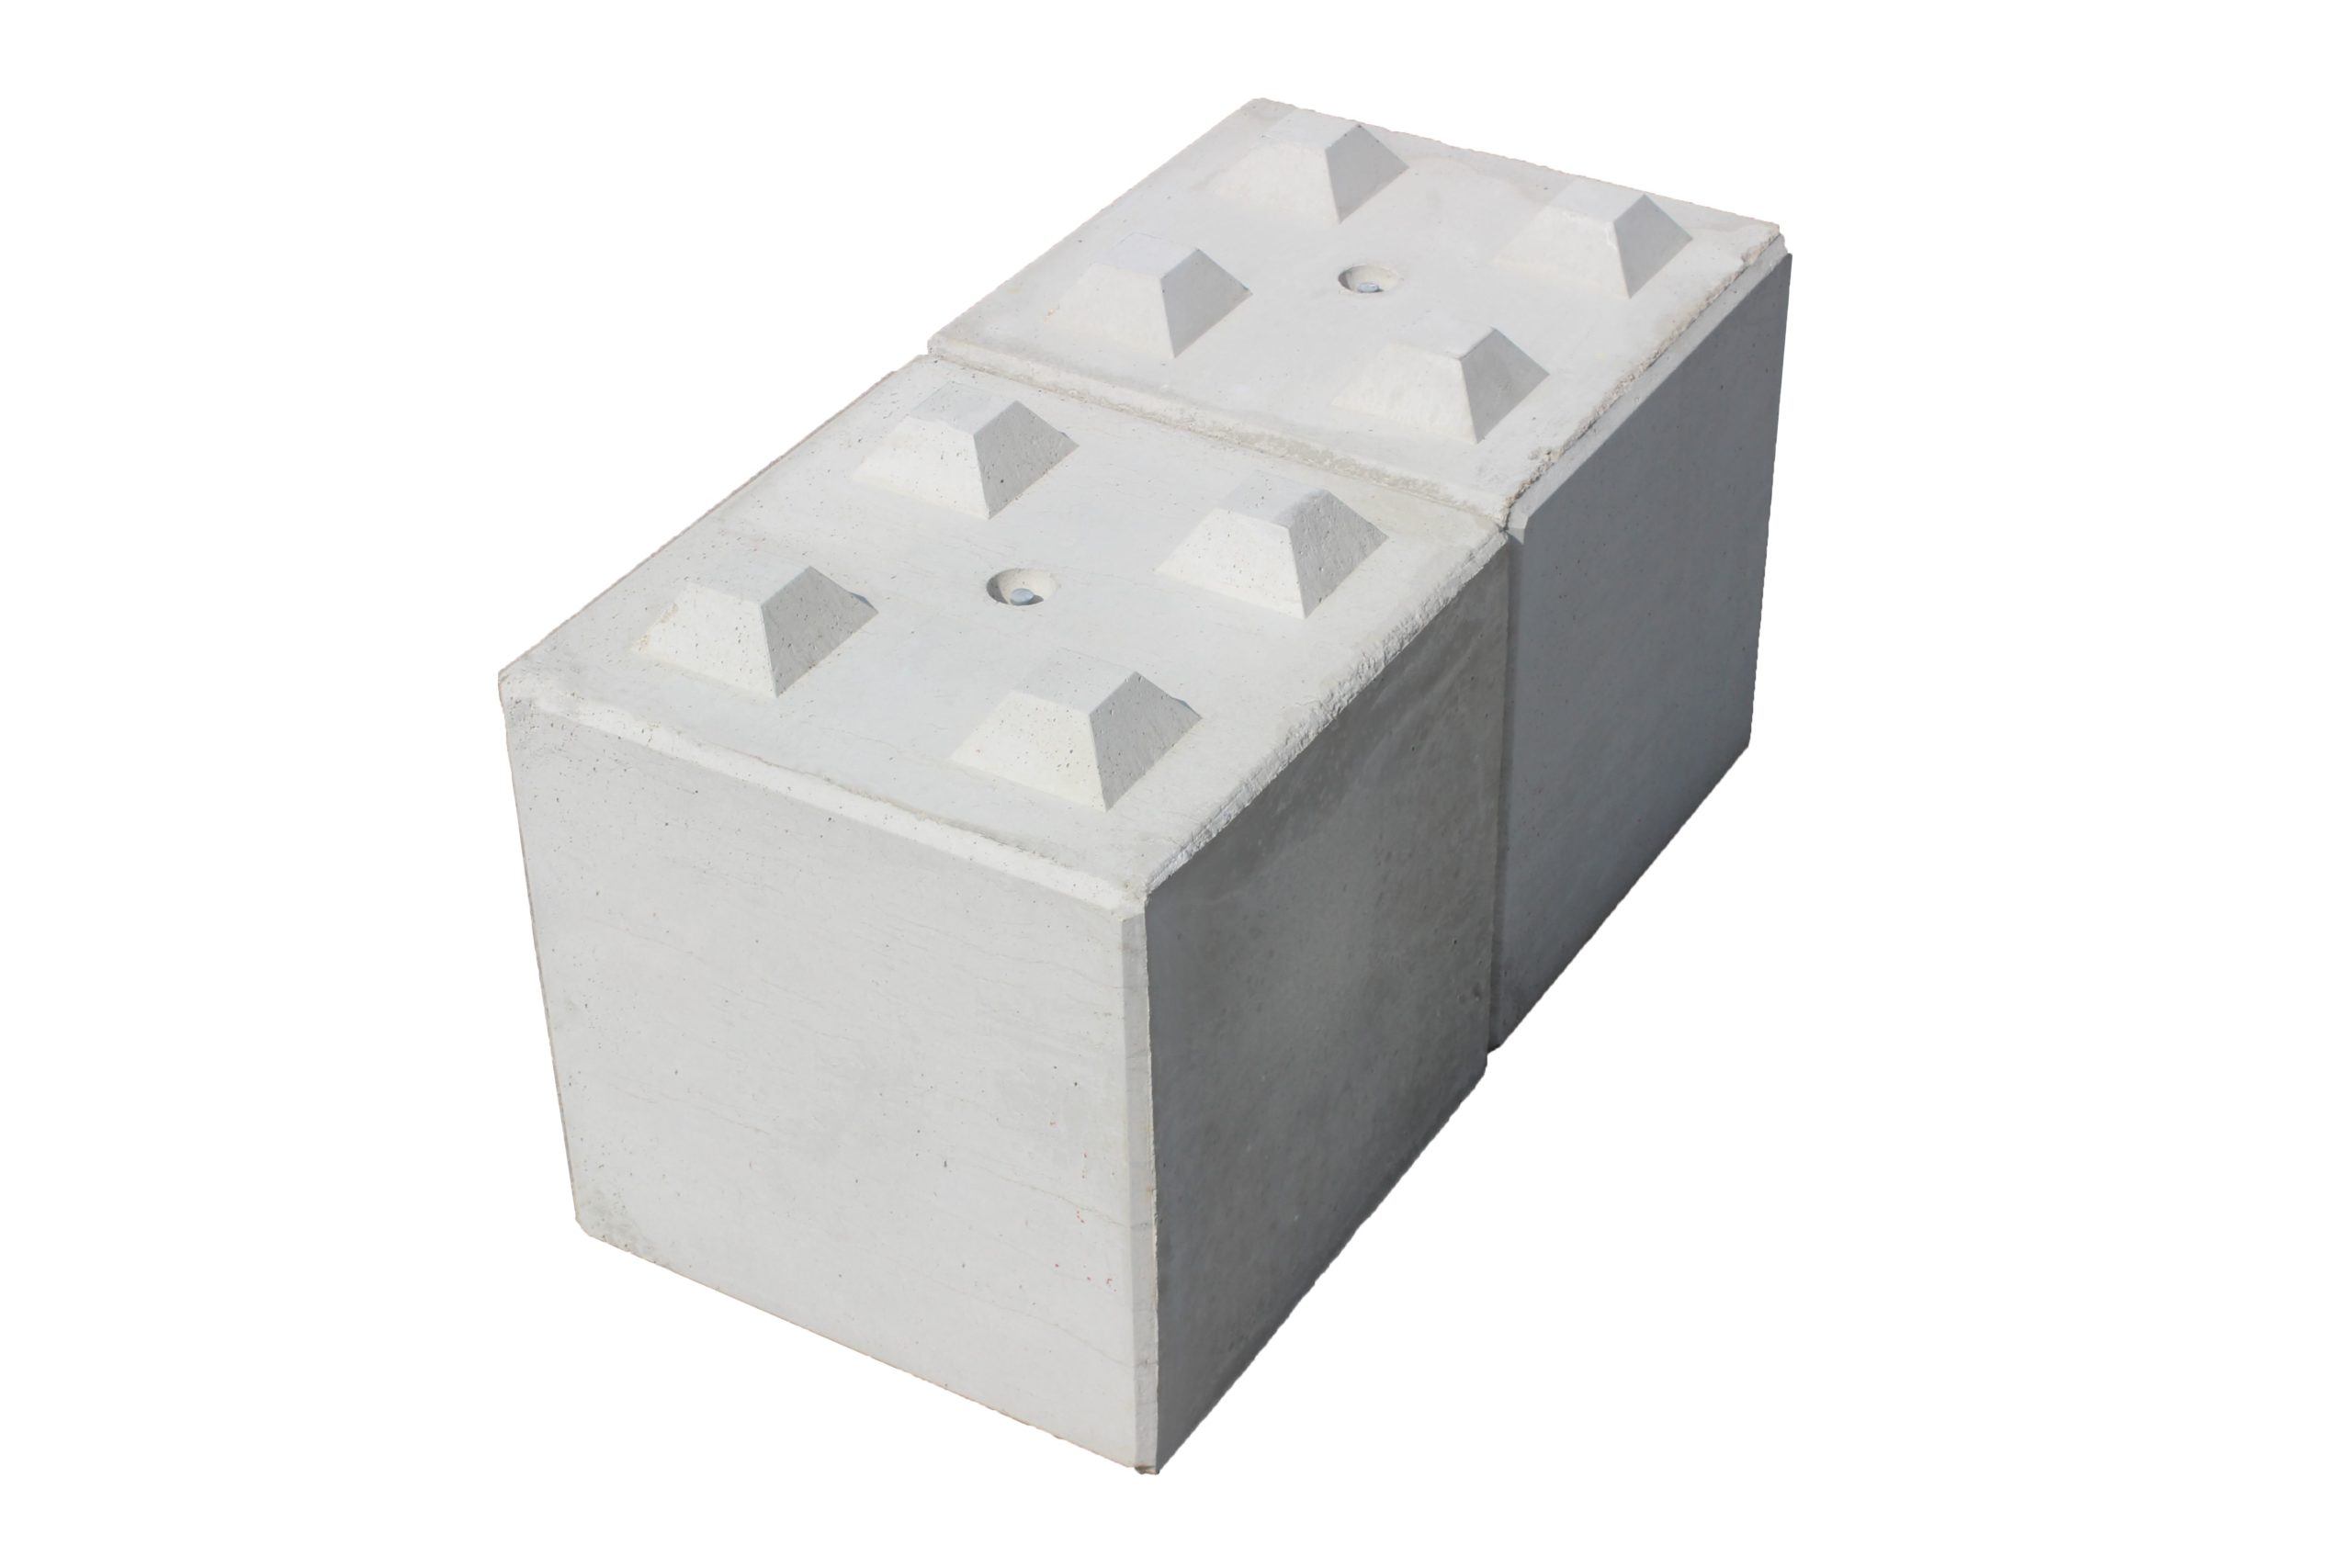 LitoMagic Plaque de base empilable compatible avec Lego, Kre-O et autres  blocs de taille normale. Plateforme robuste pour briques de construction et  table d'exposition. Lot de 4 grandes feuilles blanches de 25,4